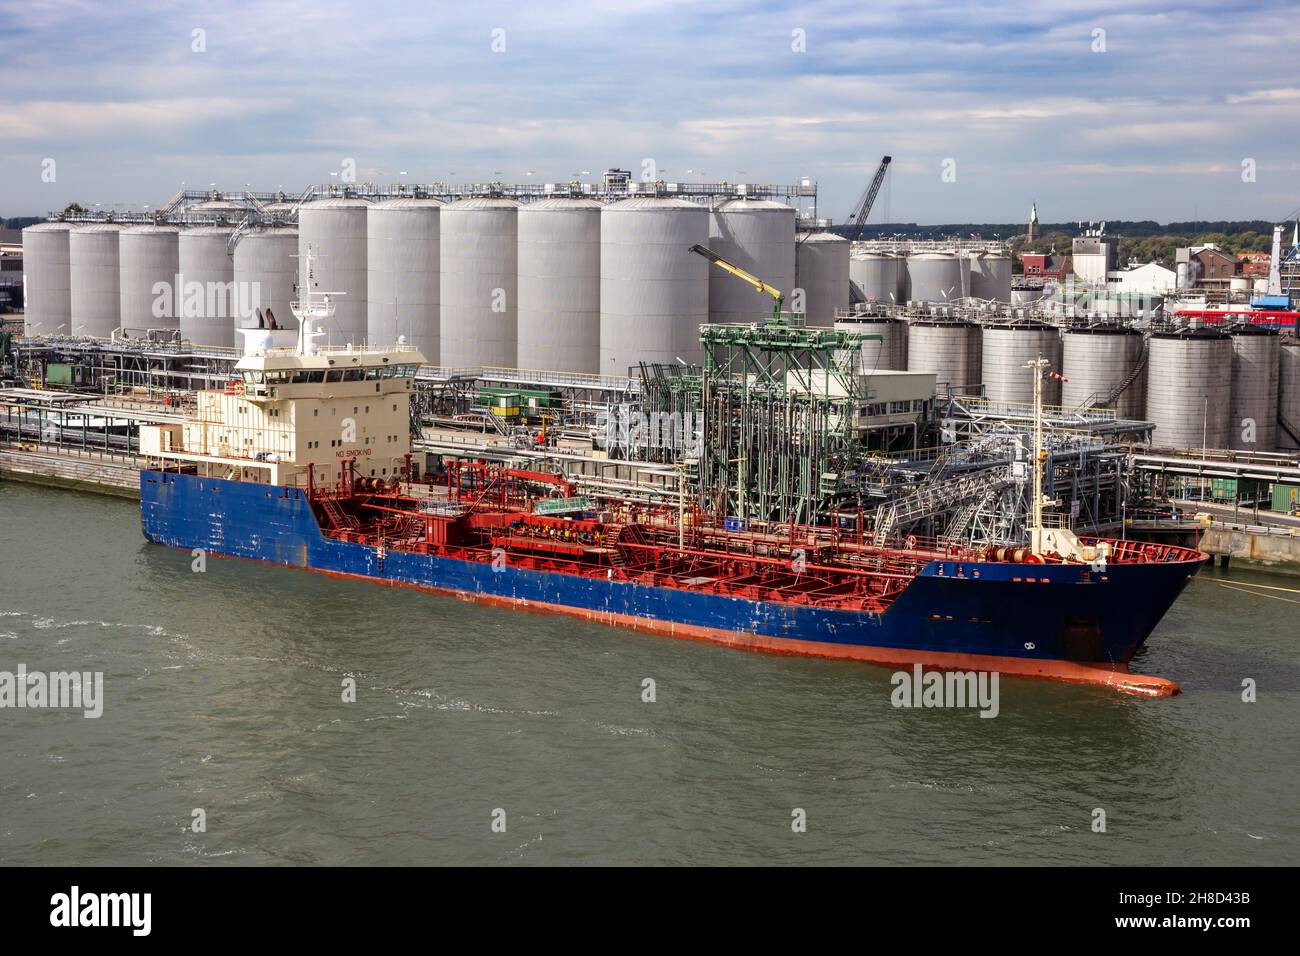 La petroliera ha ormeggiato un terminal petrolifero con silos di stoccaggio del carburante in un porto industriale Foto Stock